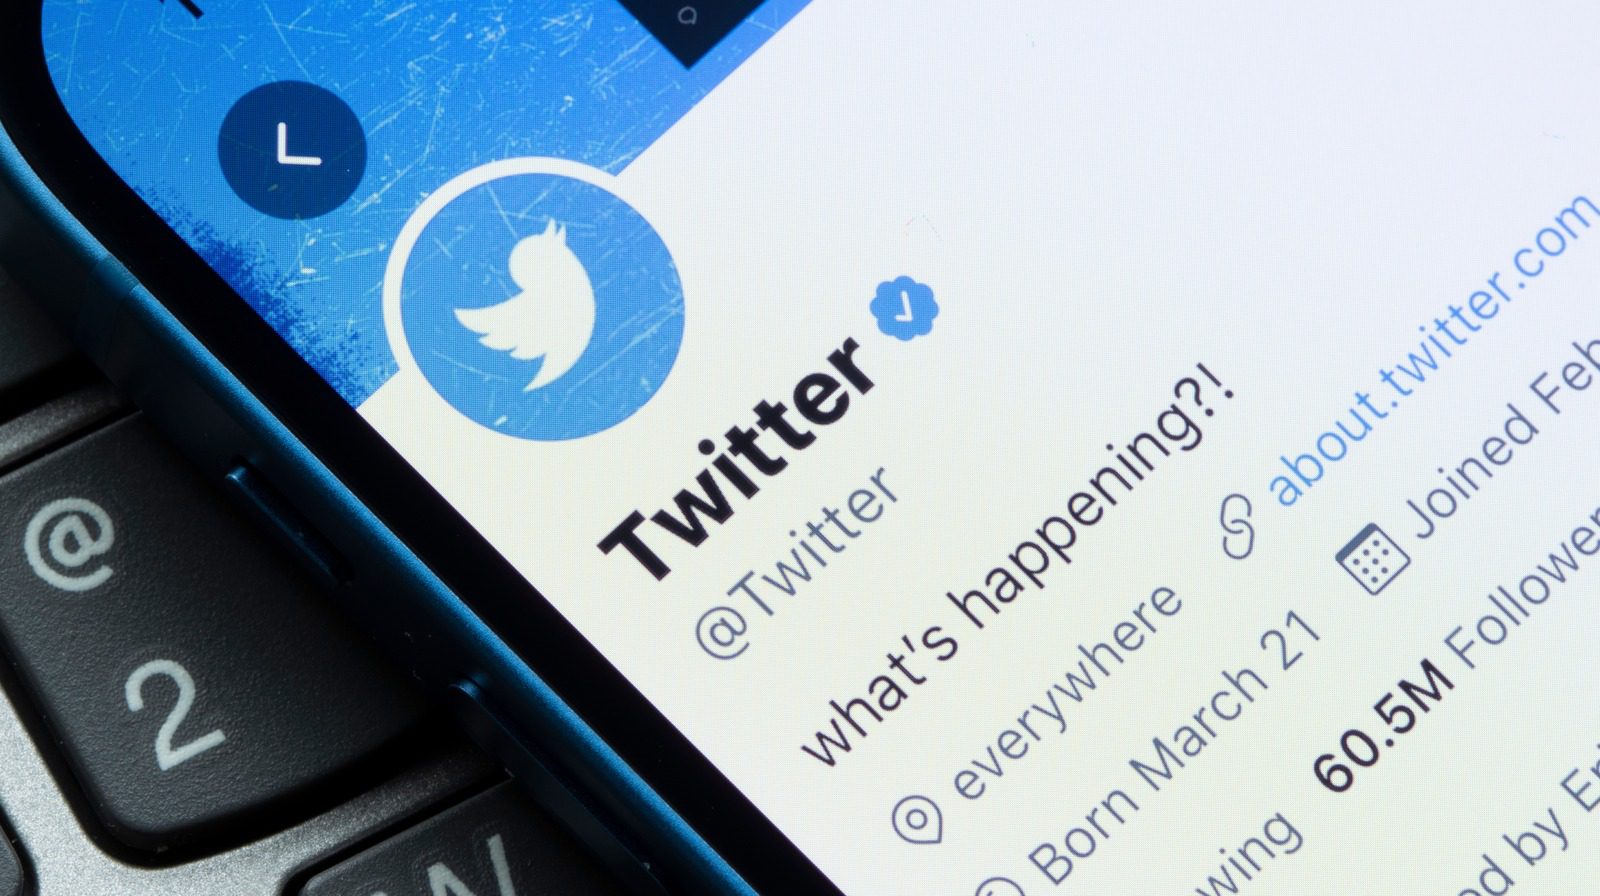 Twitter’ın Algoritması, Bu Yaygın Hataların Erişiminize Zarar Verdiğini Gösteriyor